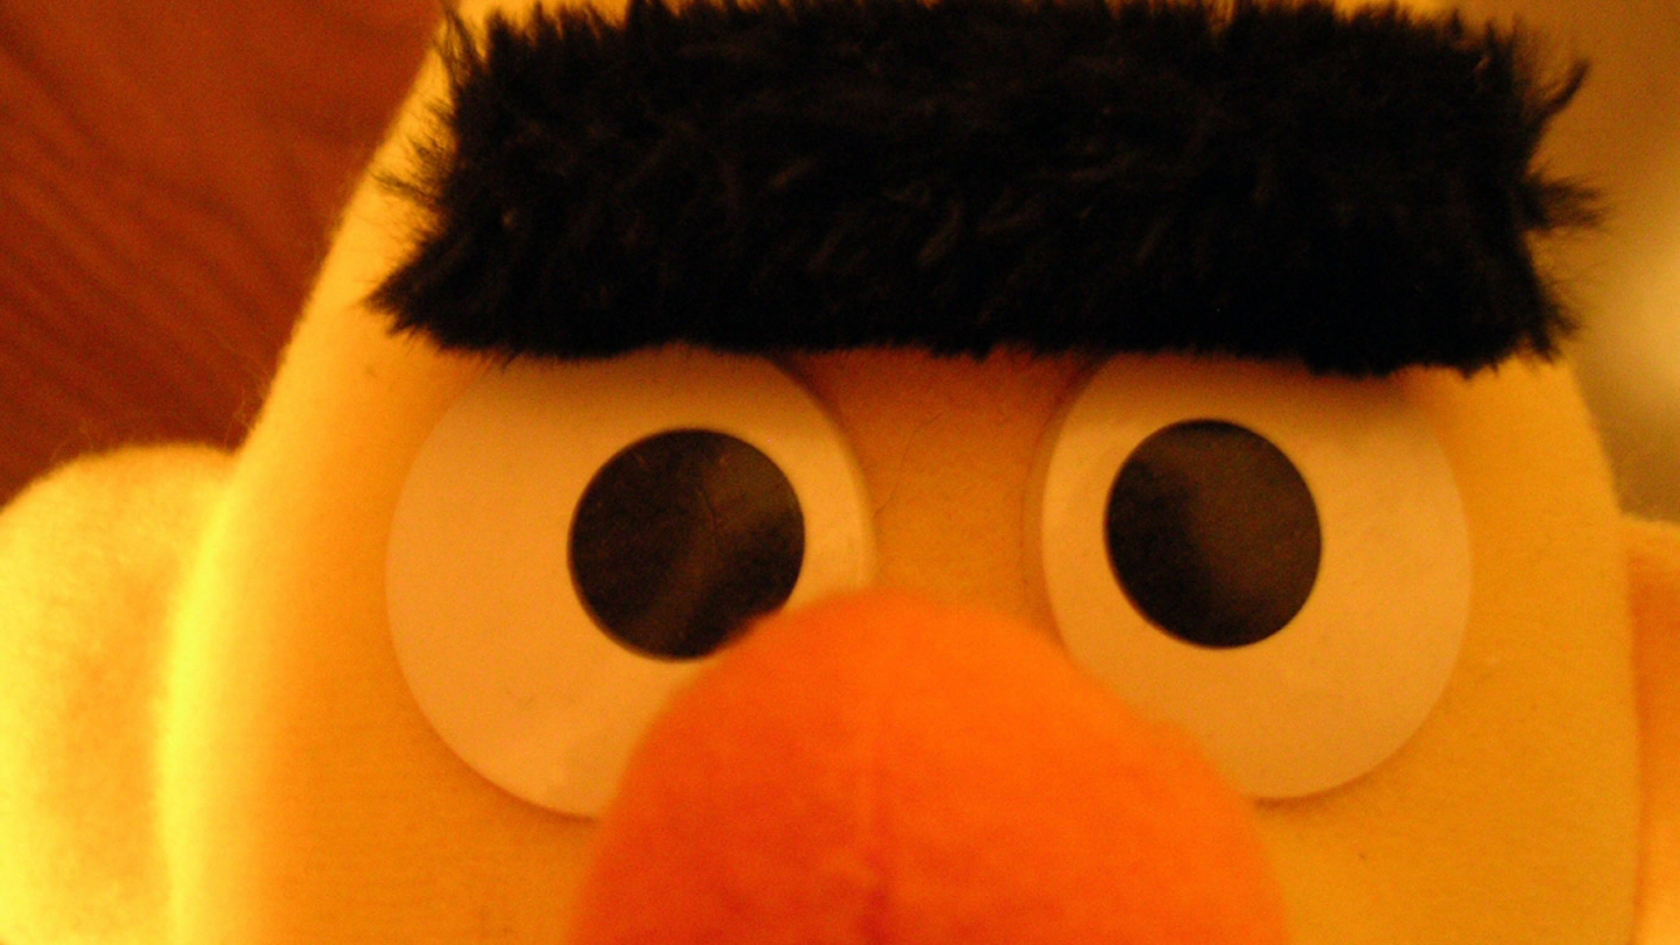 Sesame Street Ernie for 1680 x 945 HDTV resolution